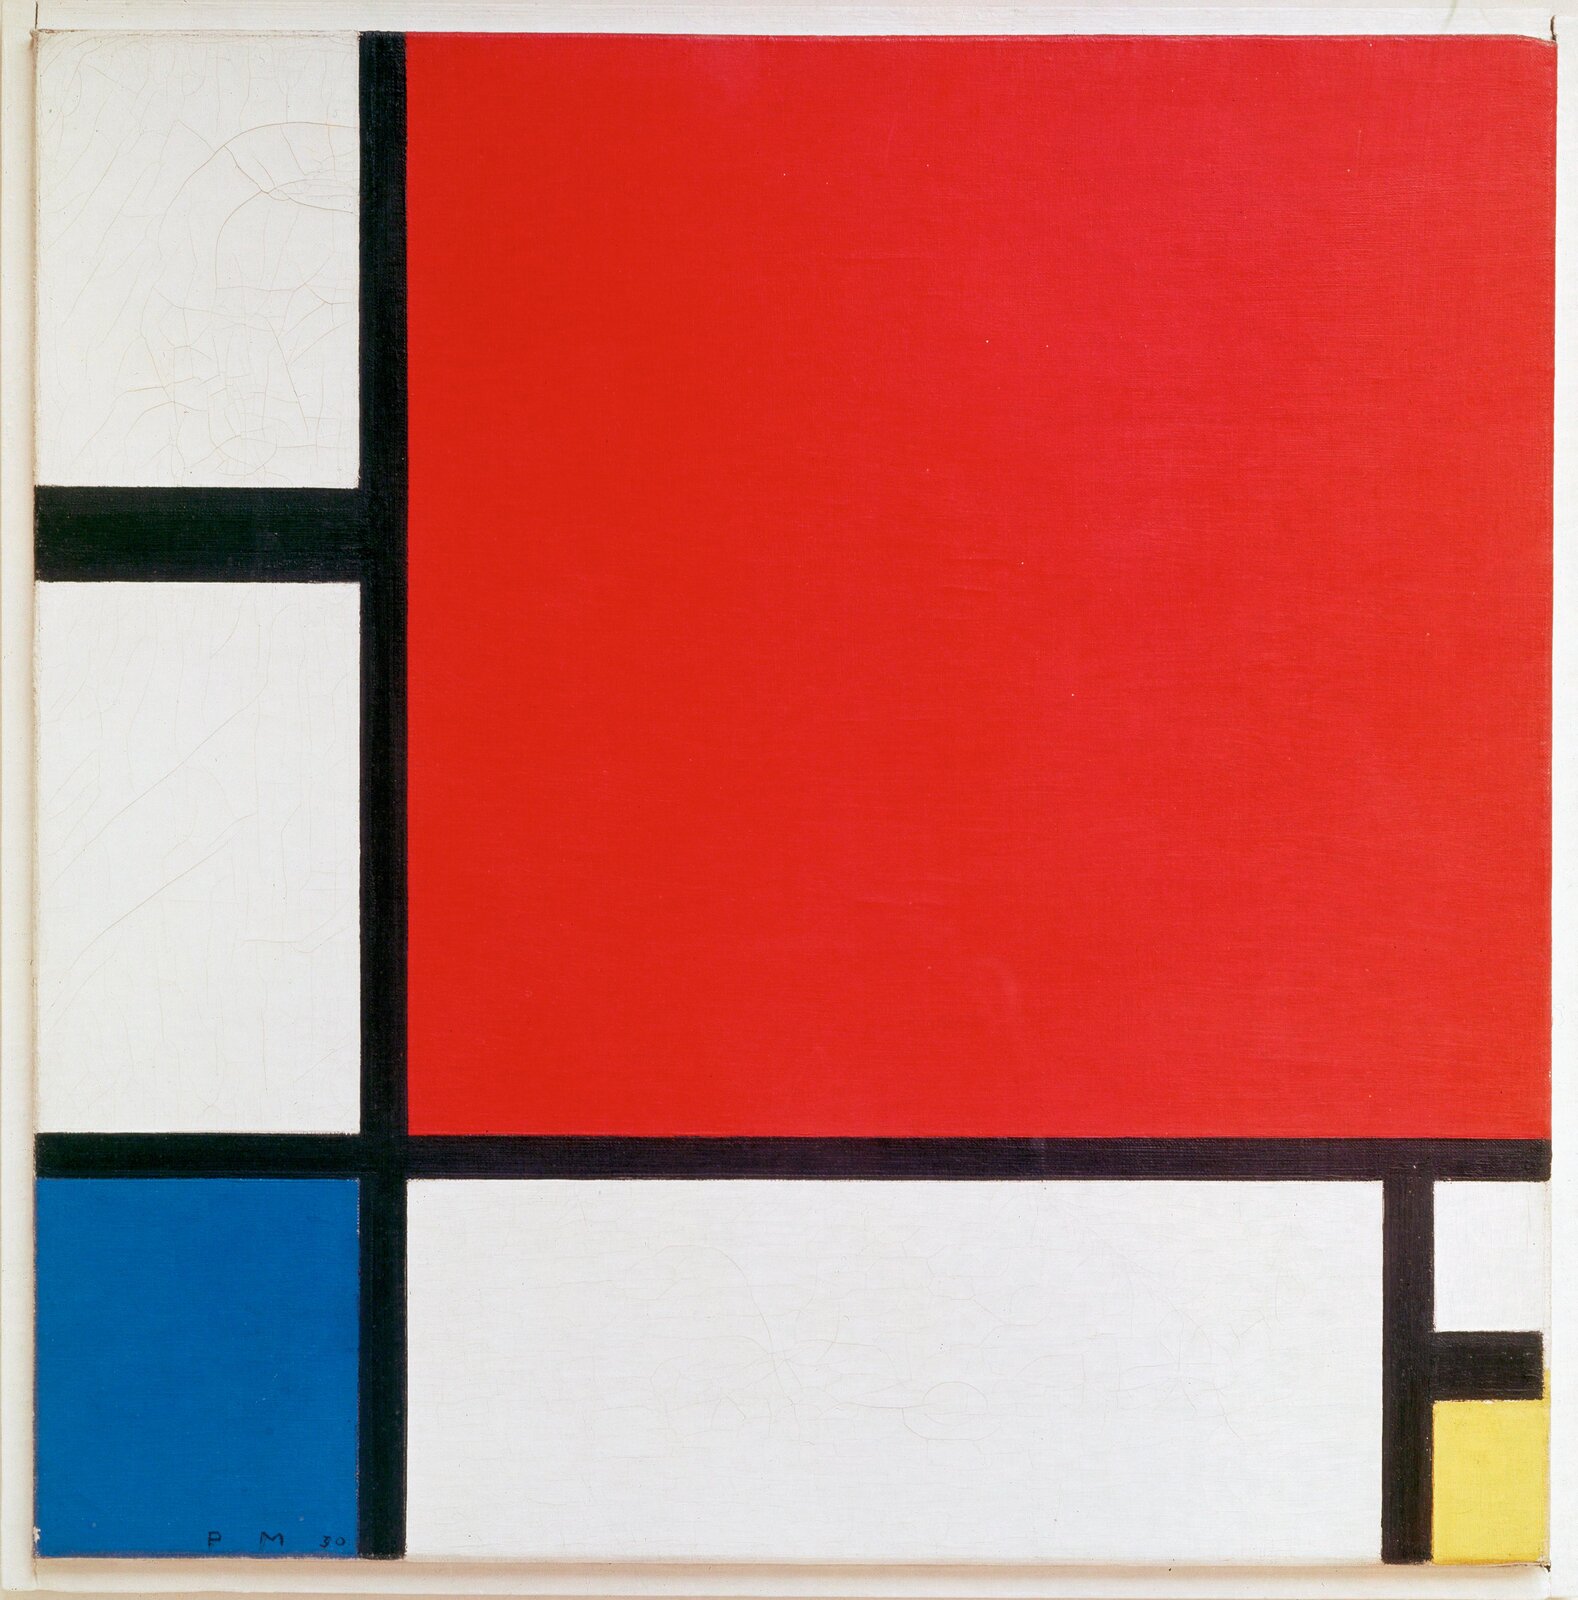 Ilustracja przedstawia obraz Pieta Mondriana „Kompozycja z czerwonym, niebieskim i żółtym”. Ukazuje abstrakcję, podzieloną czarnymi, pionowymi i poziomymi liniami, przecinającymi się pod kątem prostym i tworzącymi geometryczne pola o różnych powierzchniach. Najwięcej miejsca zajmuje usytuowany w górnym, prawym rogu czerwony kwadrat. W dolnym, lewym rogu znajduje się mniejszy, niebieski prostokąt zbliżony do kwadratu, a po przeciwnej stronie, w prawej, dolnej części - żółty. Pozostałe pola są białe,